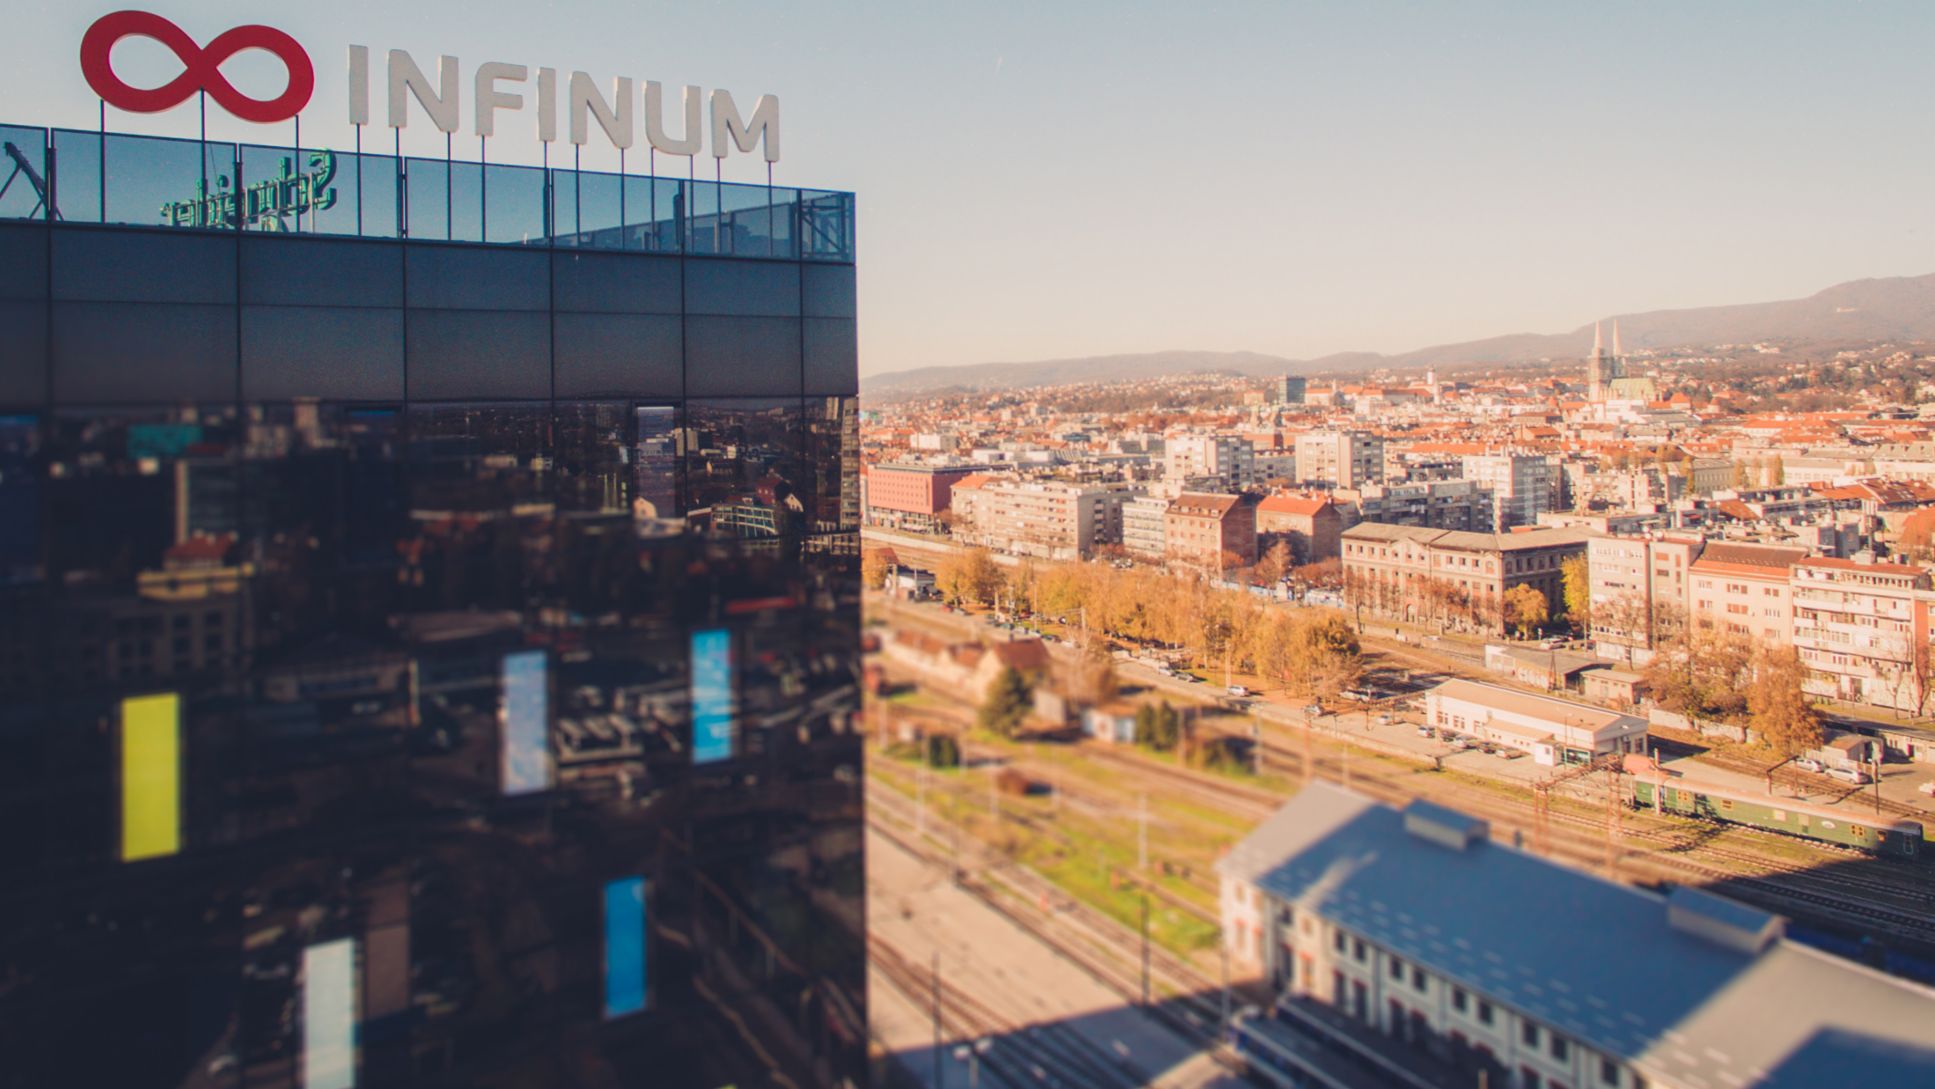 Croatian tech company Infinum, 2020, Porsche Digital GmbH